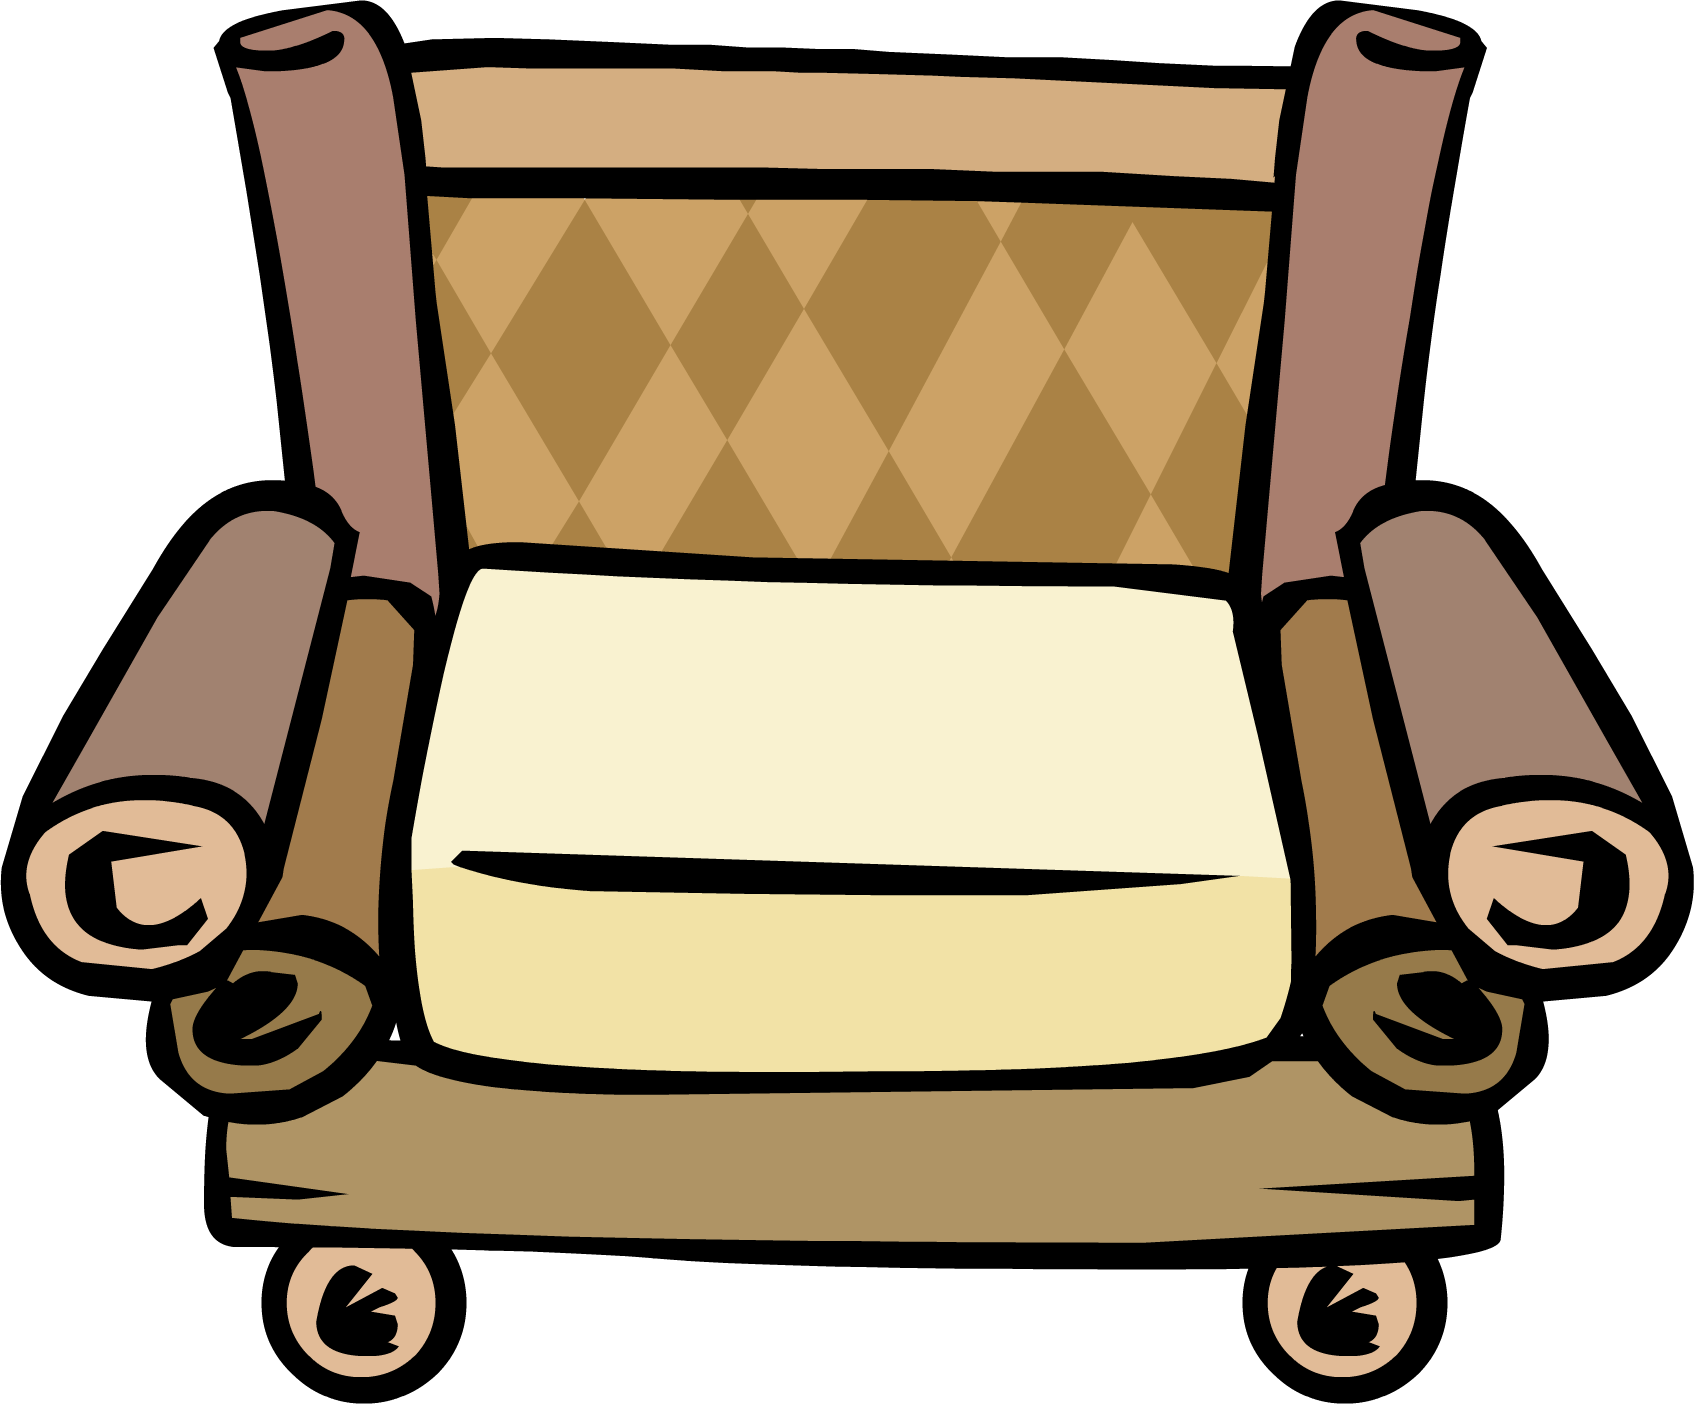 Bamboo Chair - Furniture Club Penguin Chair (1694x1404)